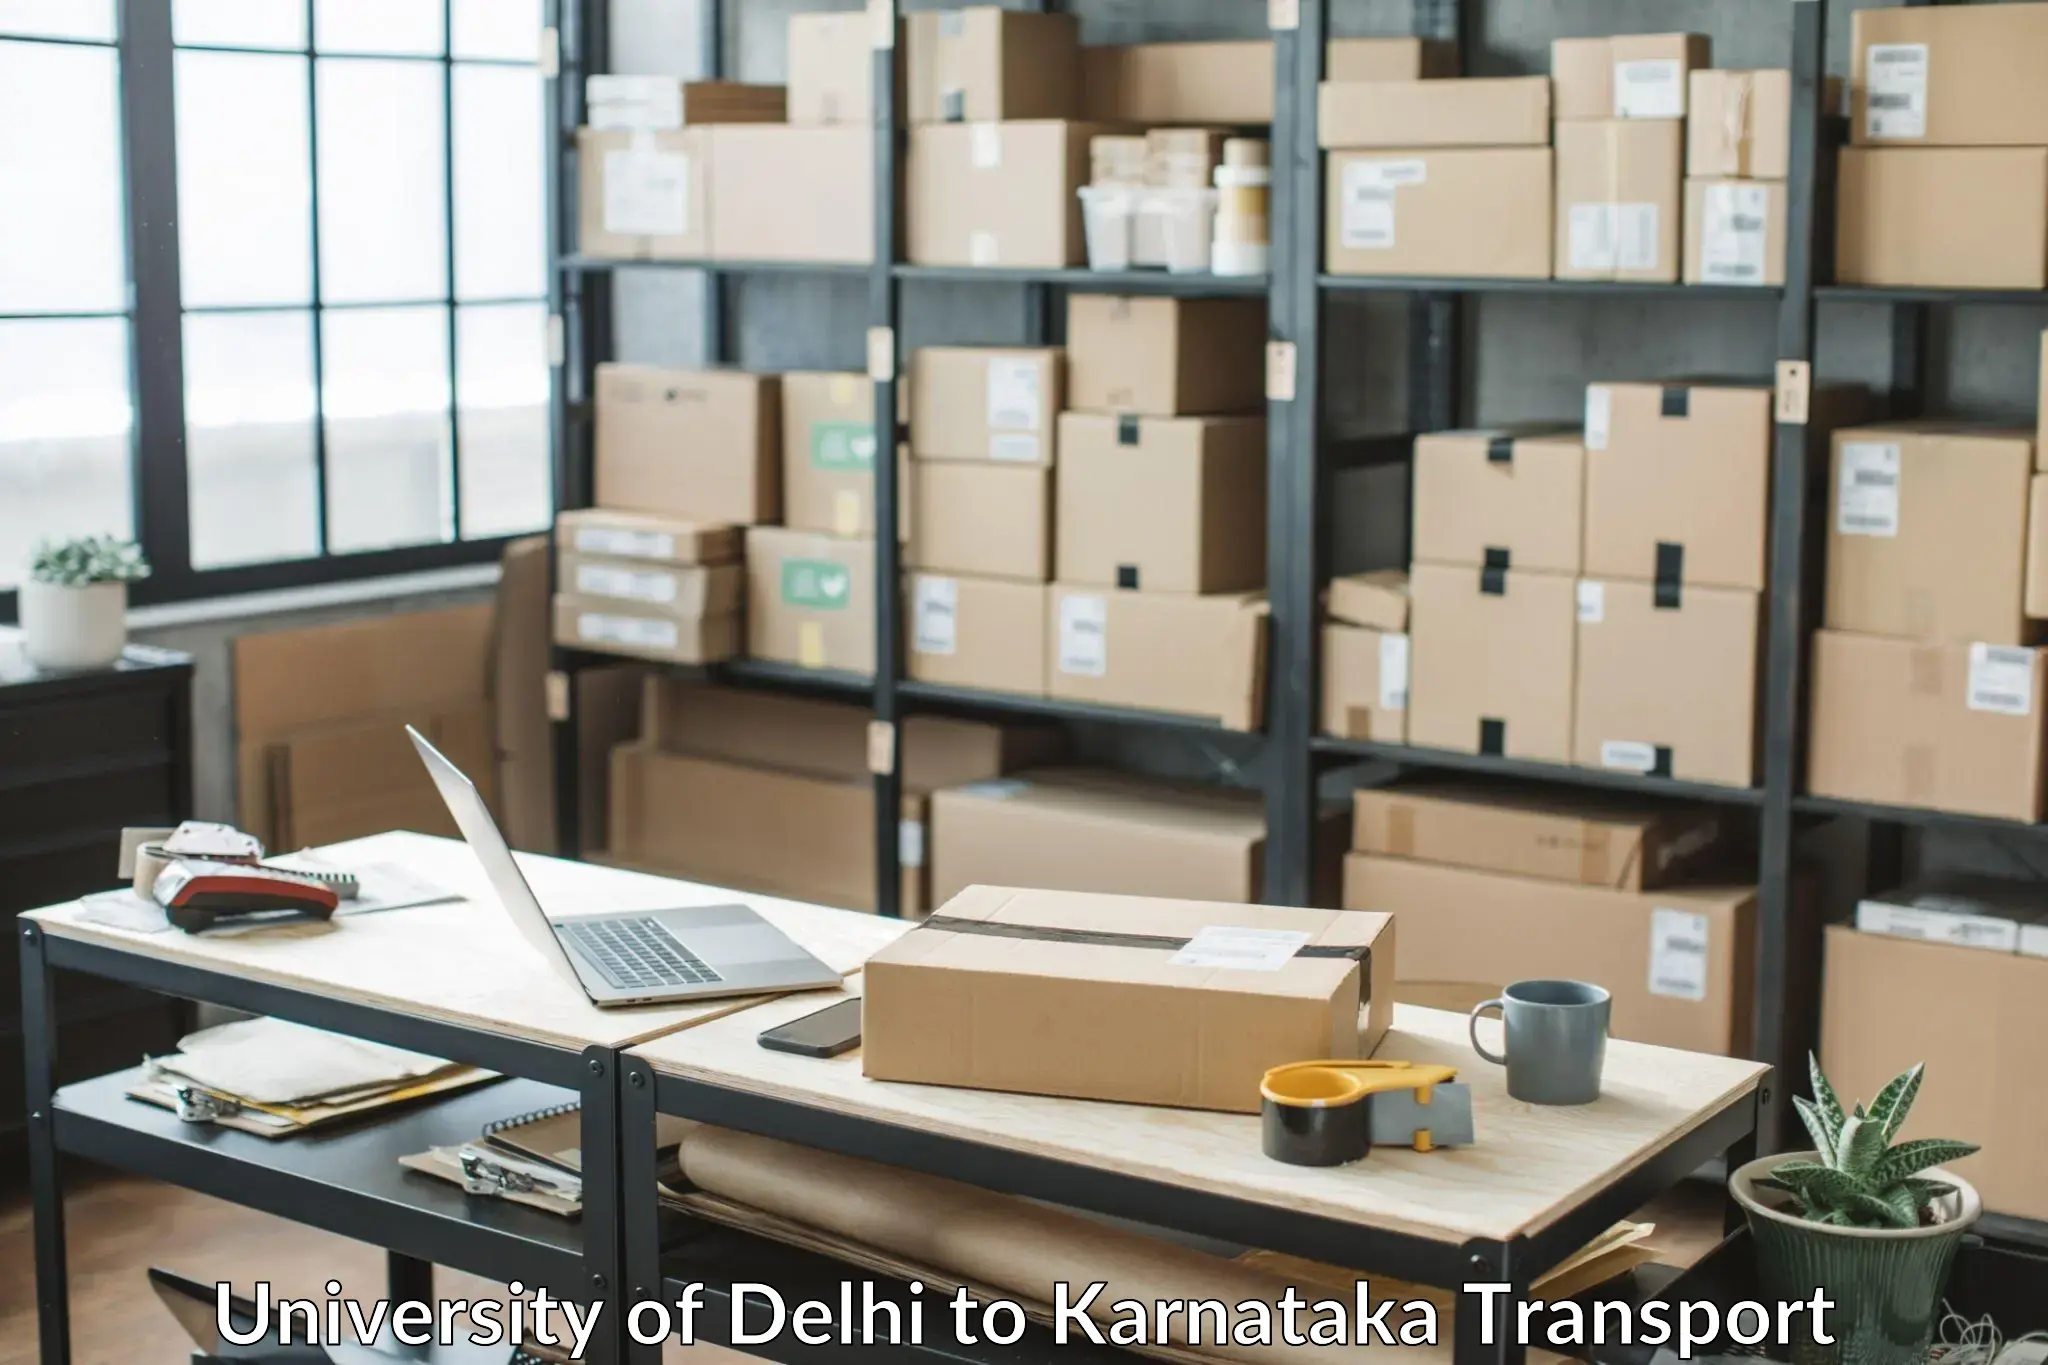 Nearest transport service University of Delhi to Karnataka